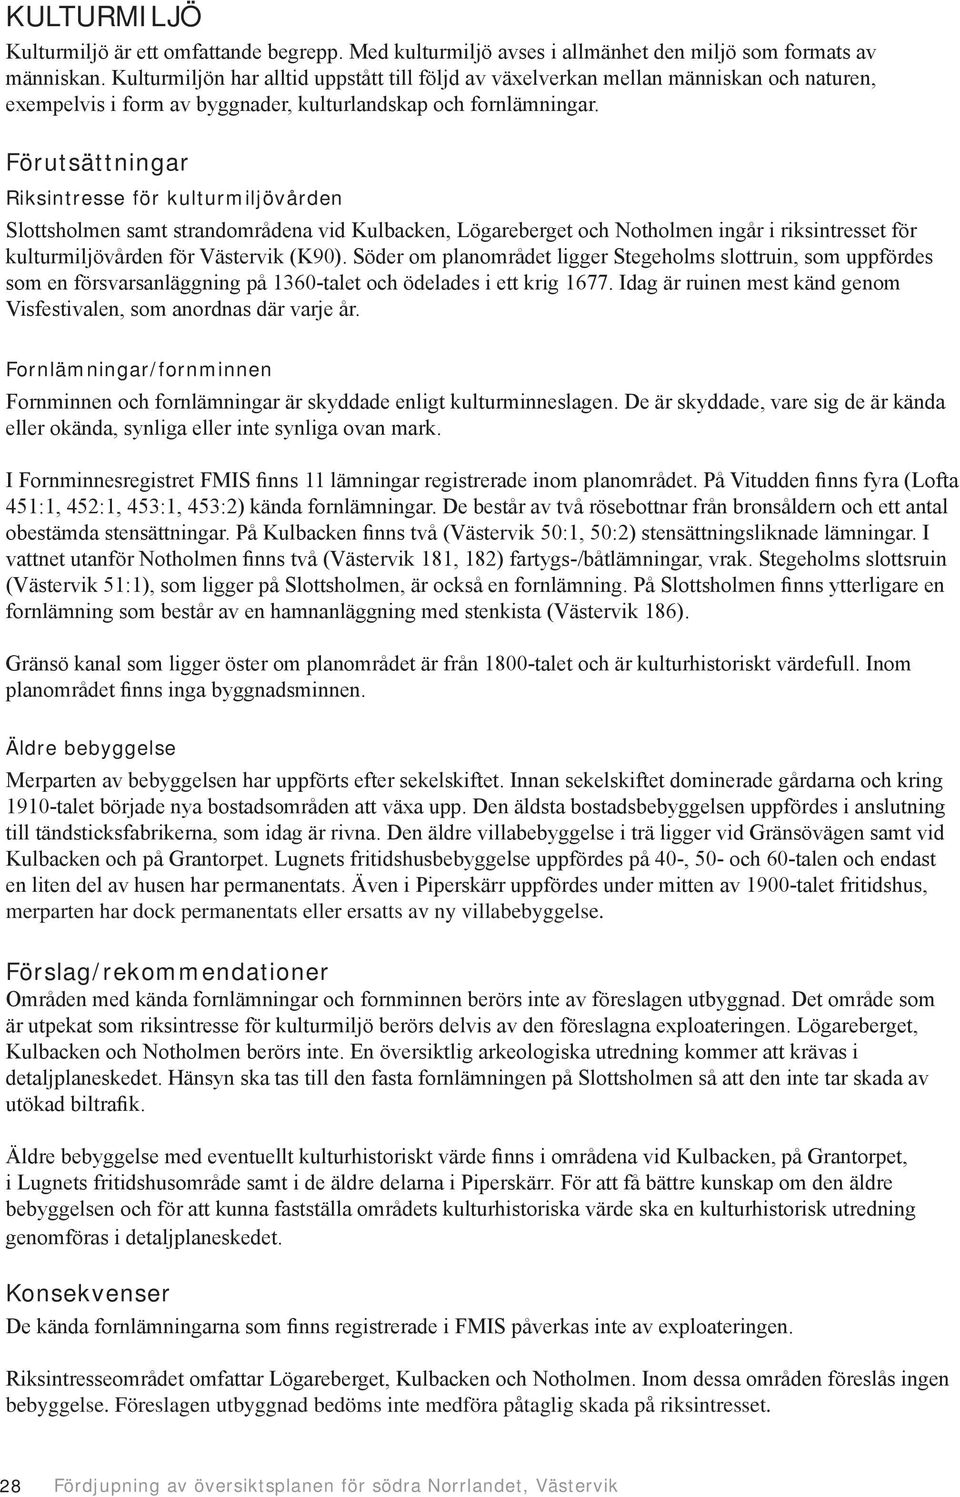 Förutsättningar Riksintresse för kulturmiljövården Slottsholmen samt strandområdena vid Kulbacken, Lögareberget och Notholmen ingår i riksintresset för kulturmiljövården för Västervik (K90).